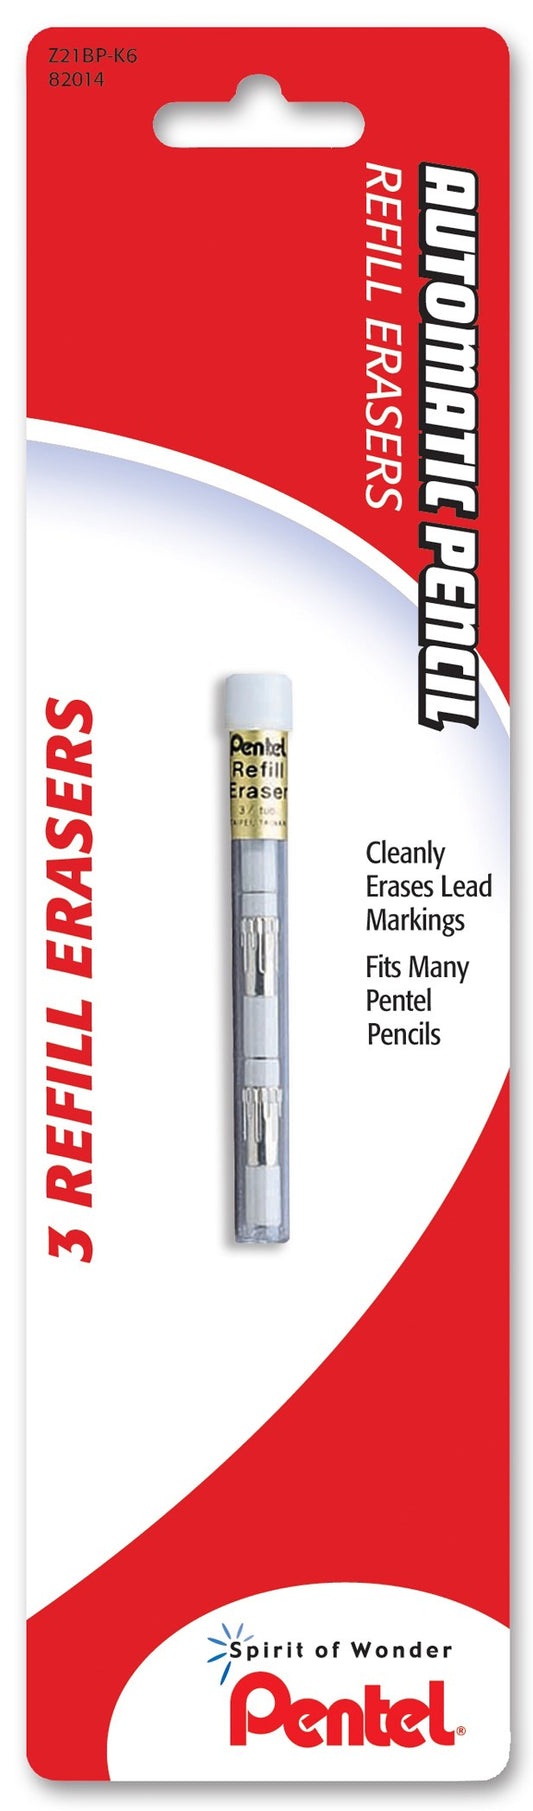 Pentel Z21bp-K6 White Pencil Eraser Refills